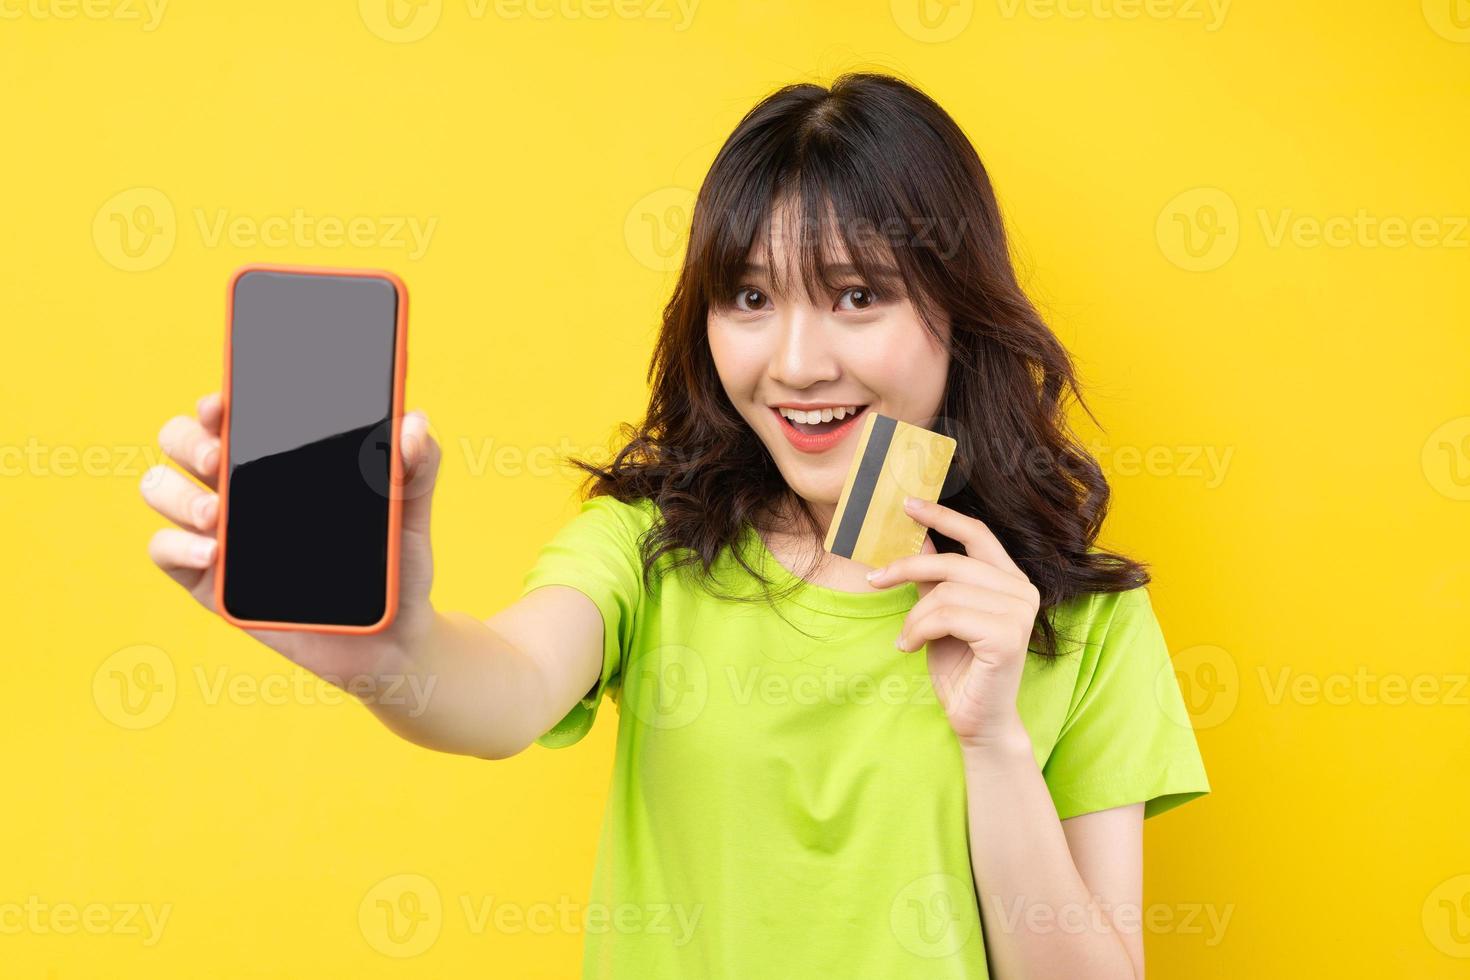 jovem segurando o telefone e o cartão de crédito com uma expressão alegre no fundo foto